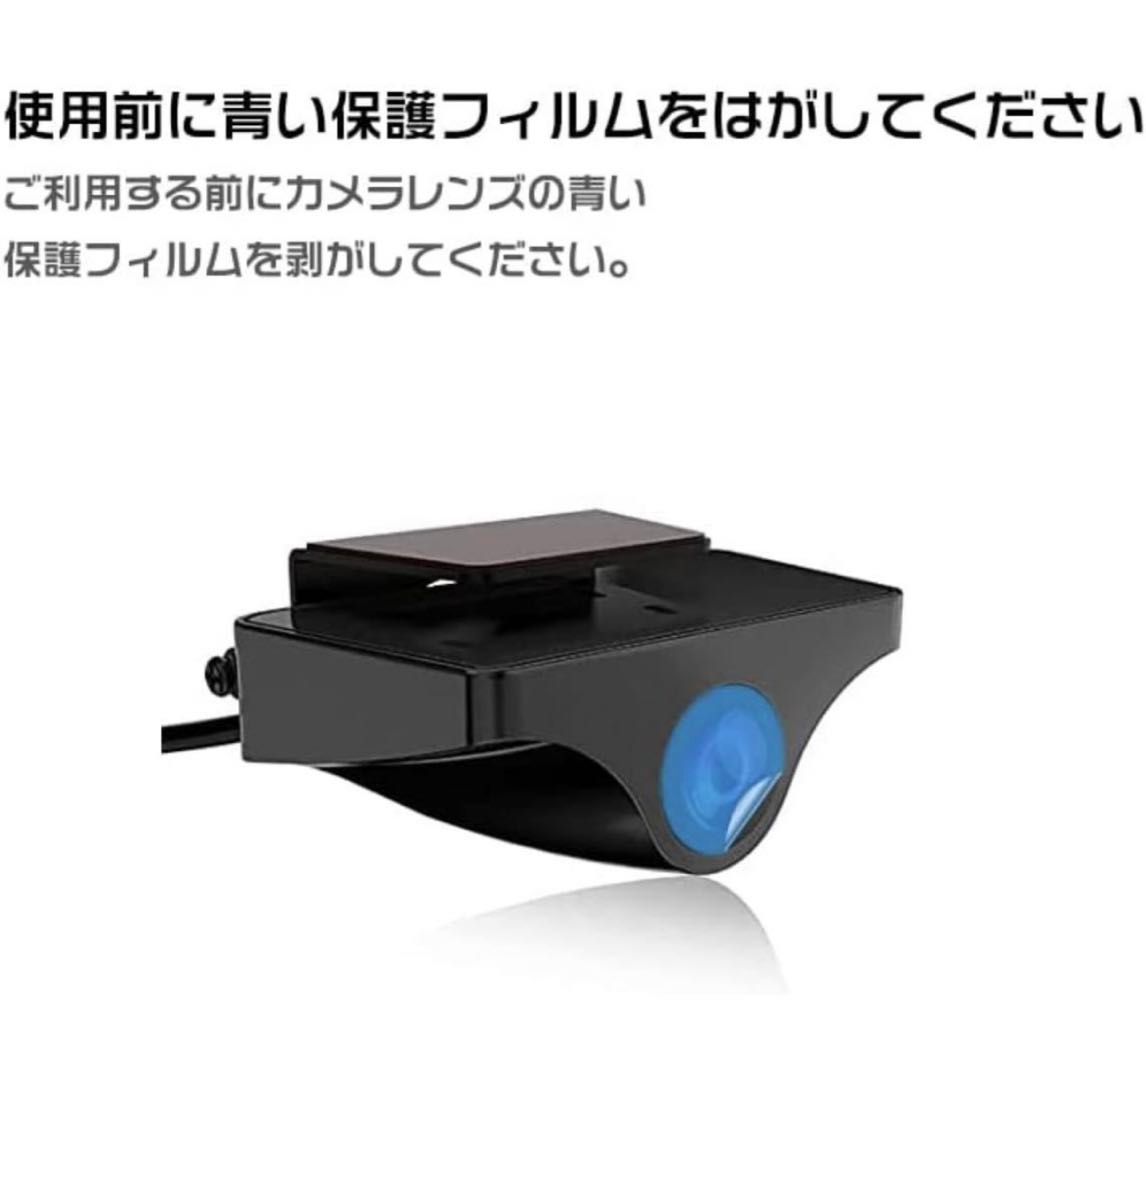 【新品☆送料無料】JADO ドライブレコーダー ミラー型 4K 地デジ対策 駐車監視 本体再生 11インチ タッチ式 日本語説明書